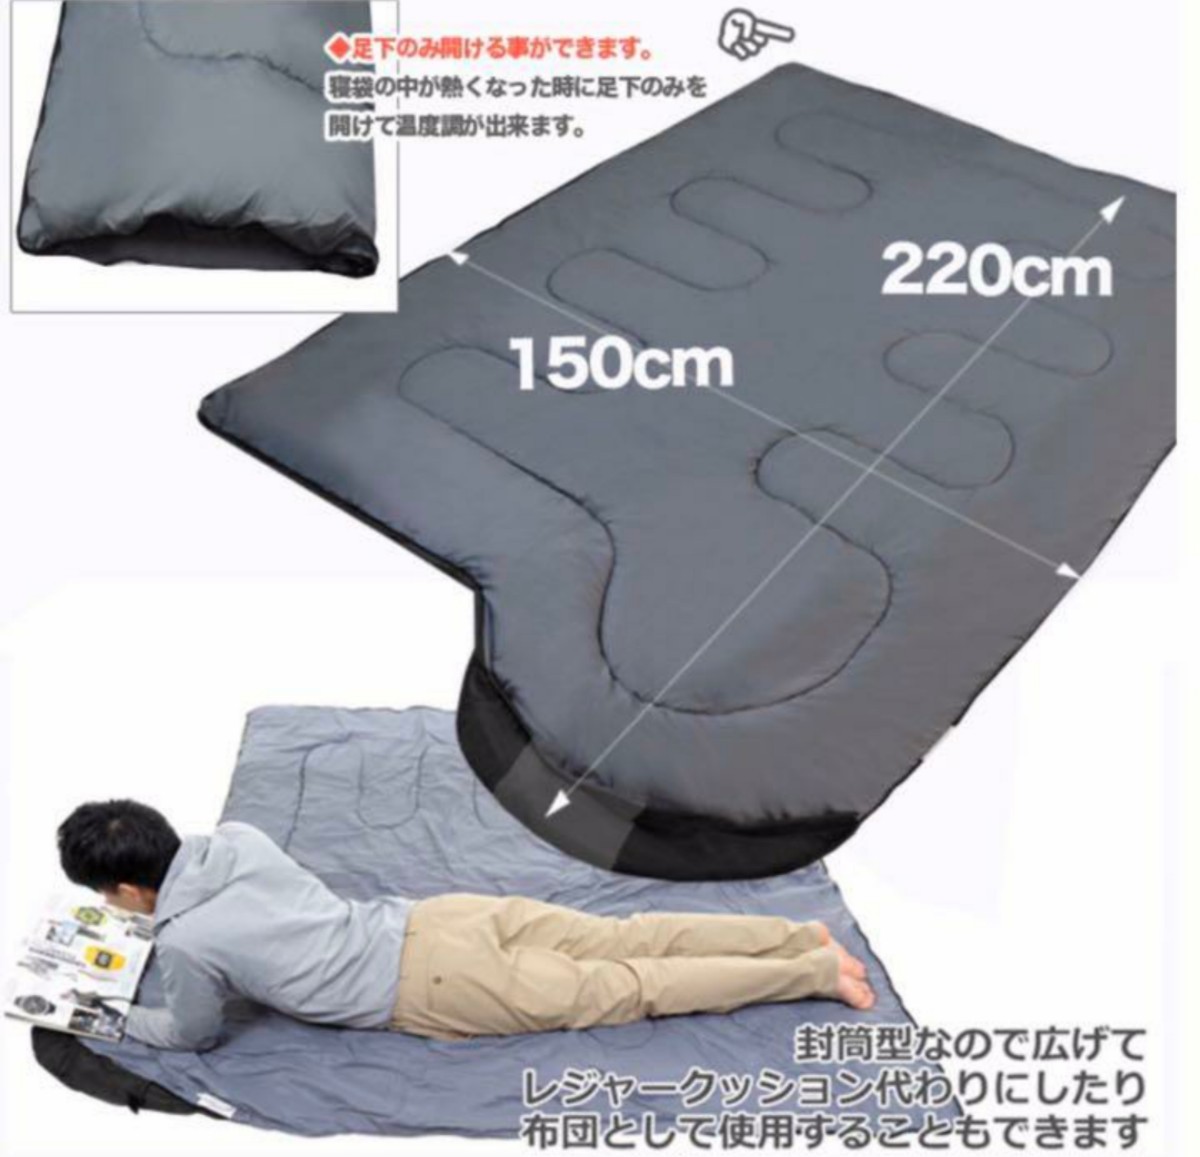 【本日最大値下げ】寝袋 シュラフ 最低使用温度 -15度 1650g カモ